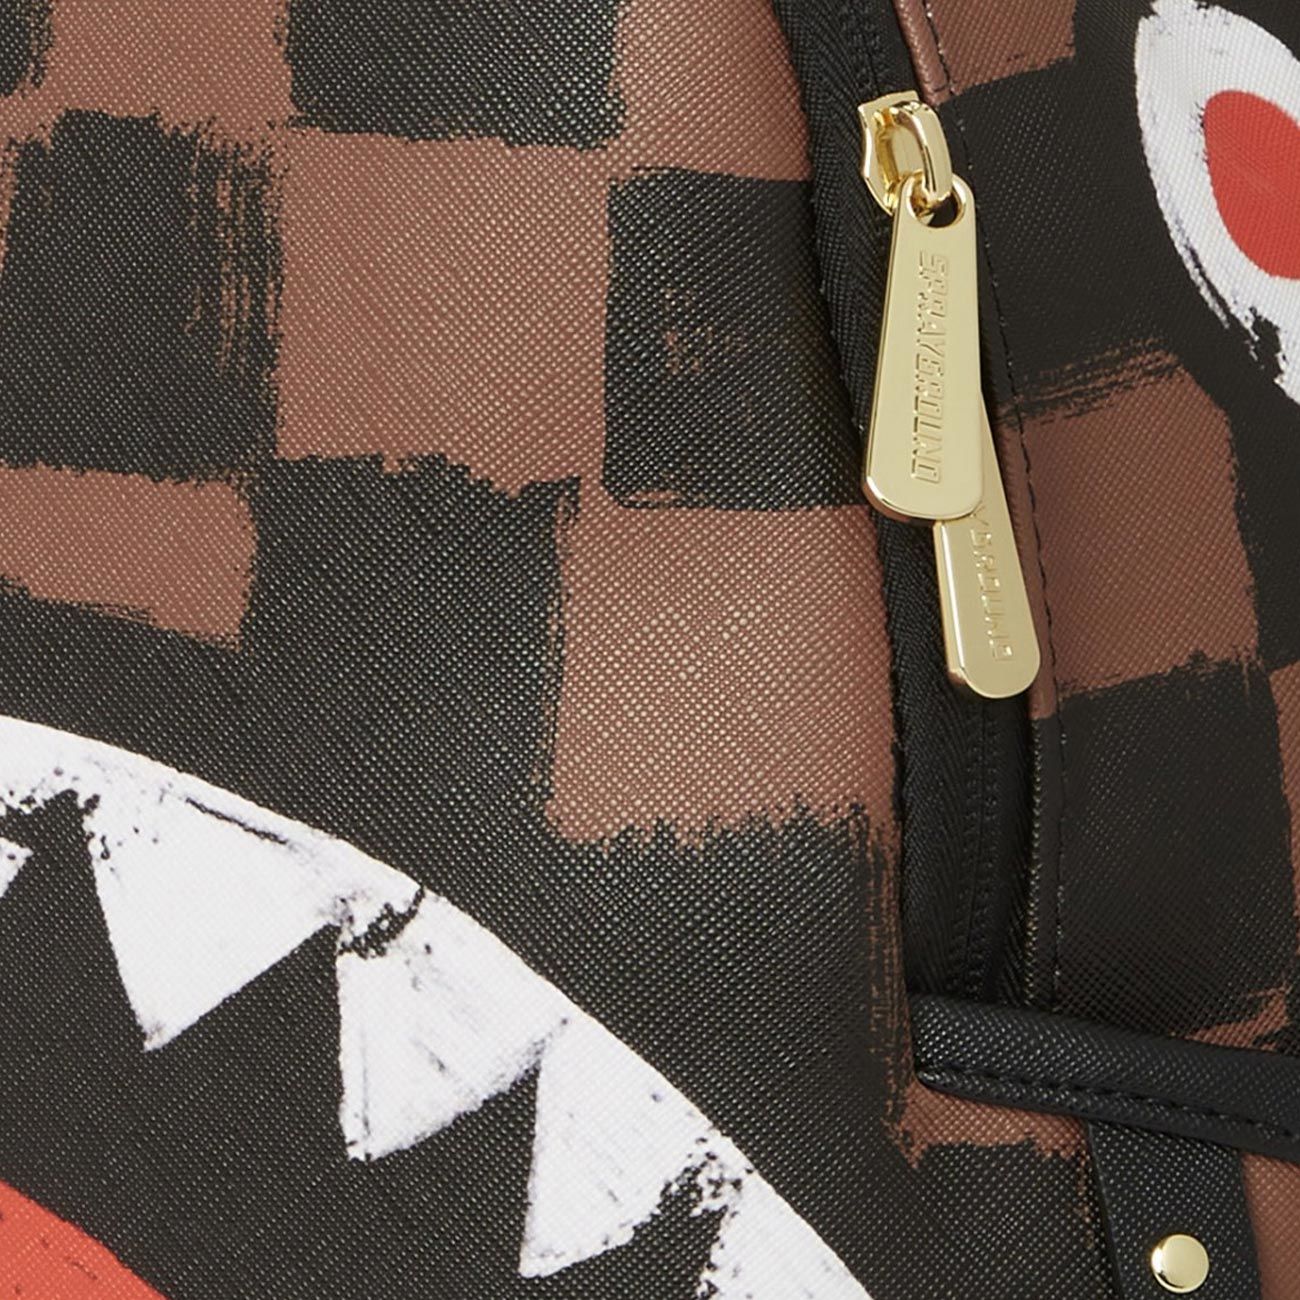 Backpacks Sprayground - Shark in Paris backpack in brown and black